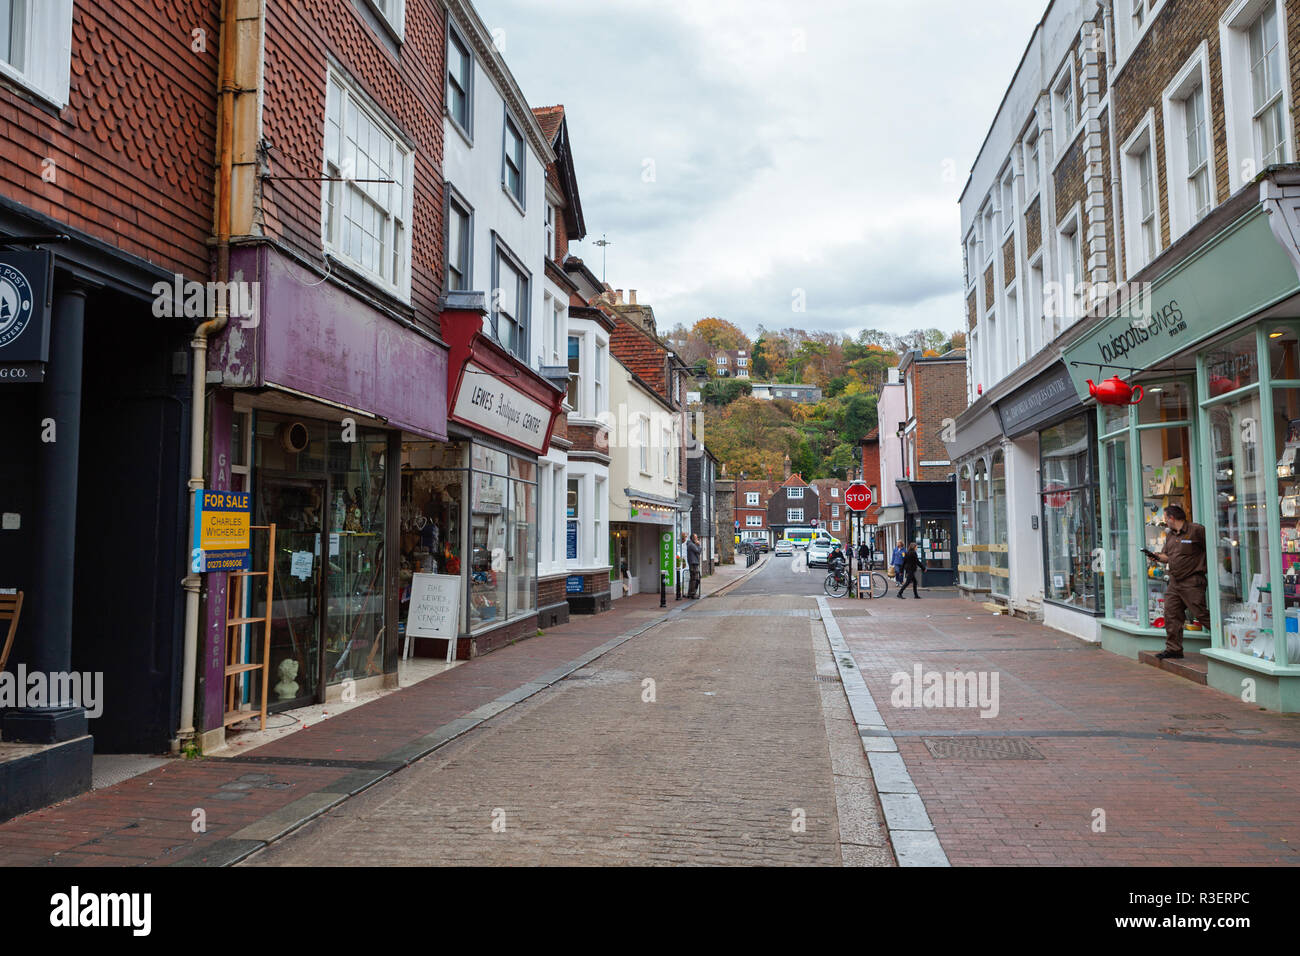 LEWES, ANGLETERRE - 6 novembre 2018 : paysage de colline de la ville de Lewes, magasins et maisons à shopping Street, East Sussex, England, UK Banque D'Images